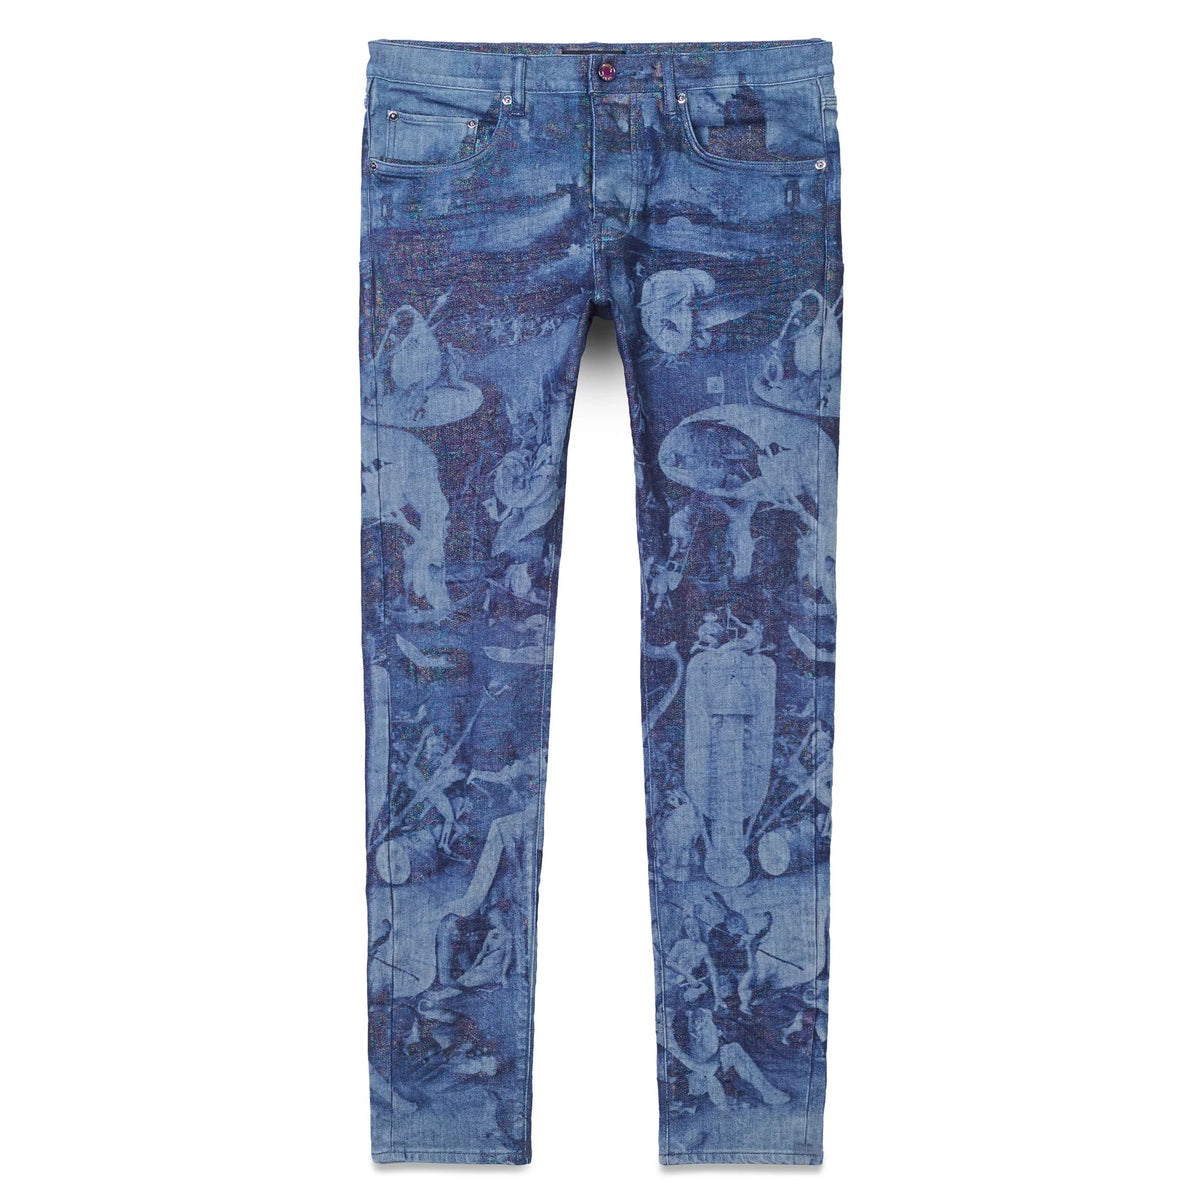 Metro Fusion - Purple Brand P001 Palms Print Jean - Men's Pants